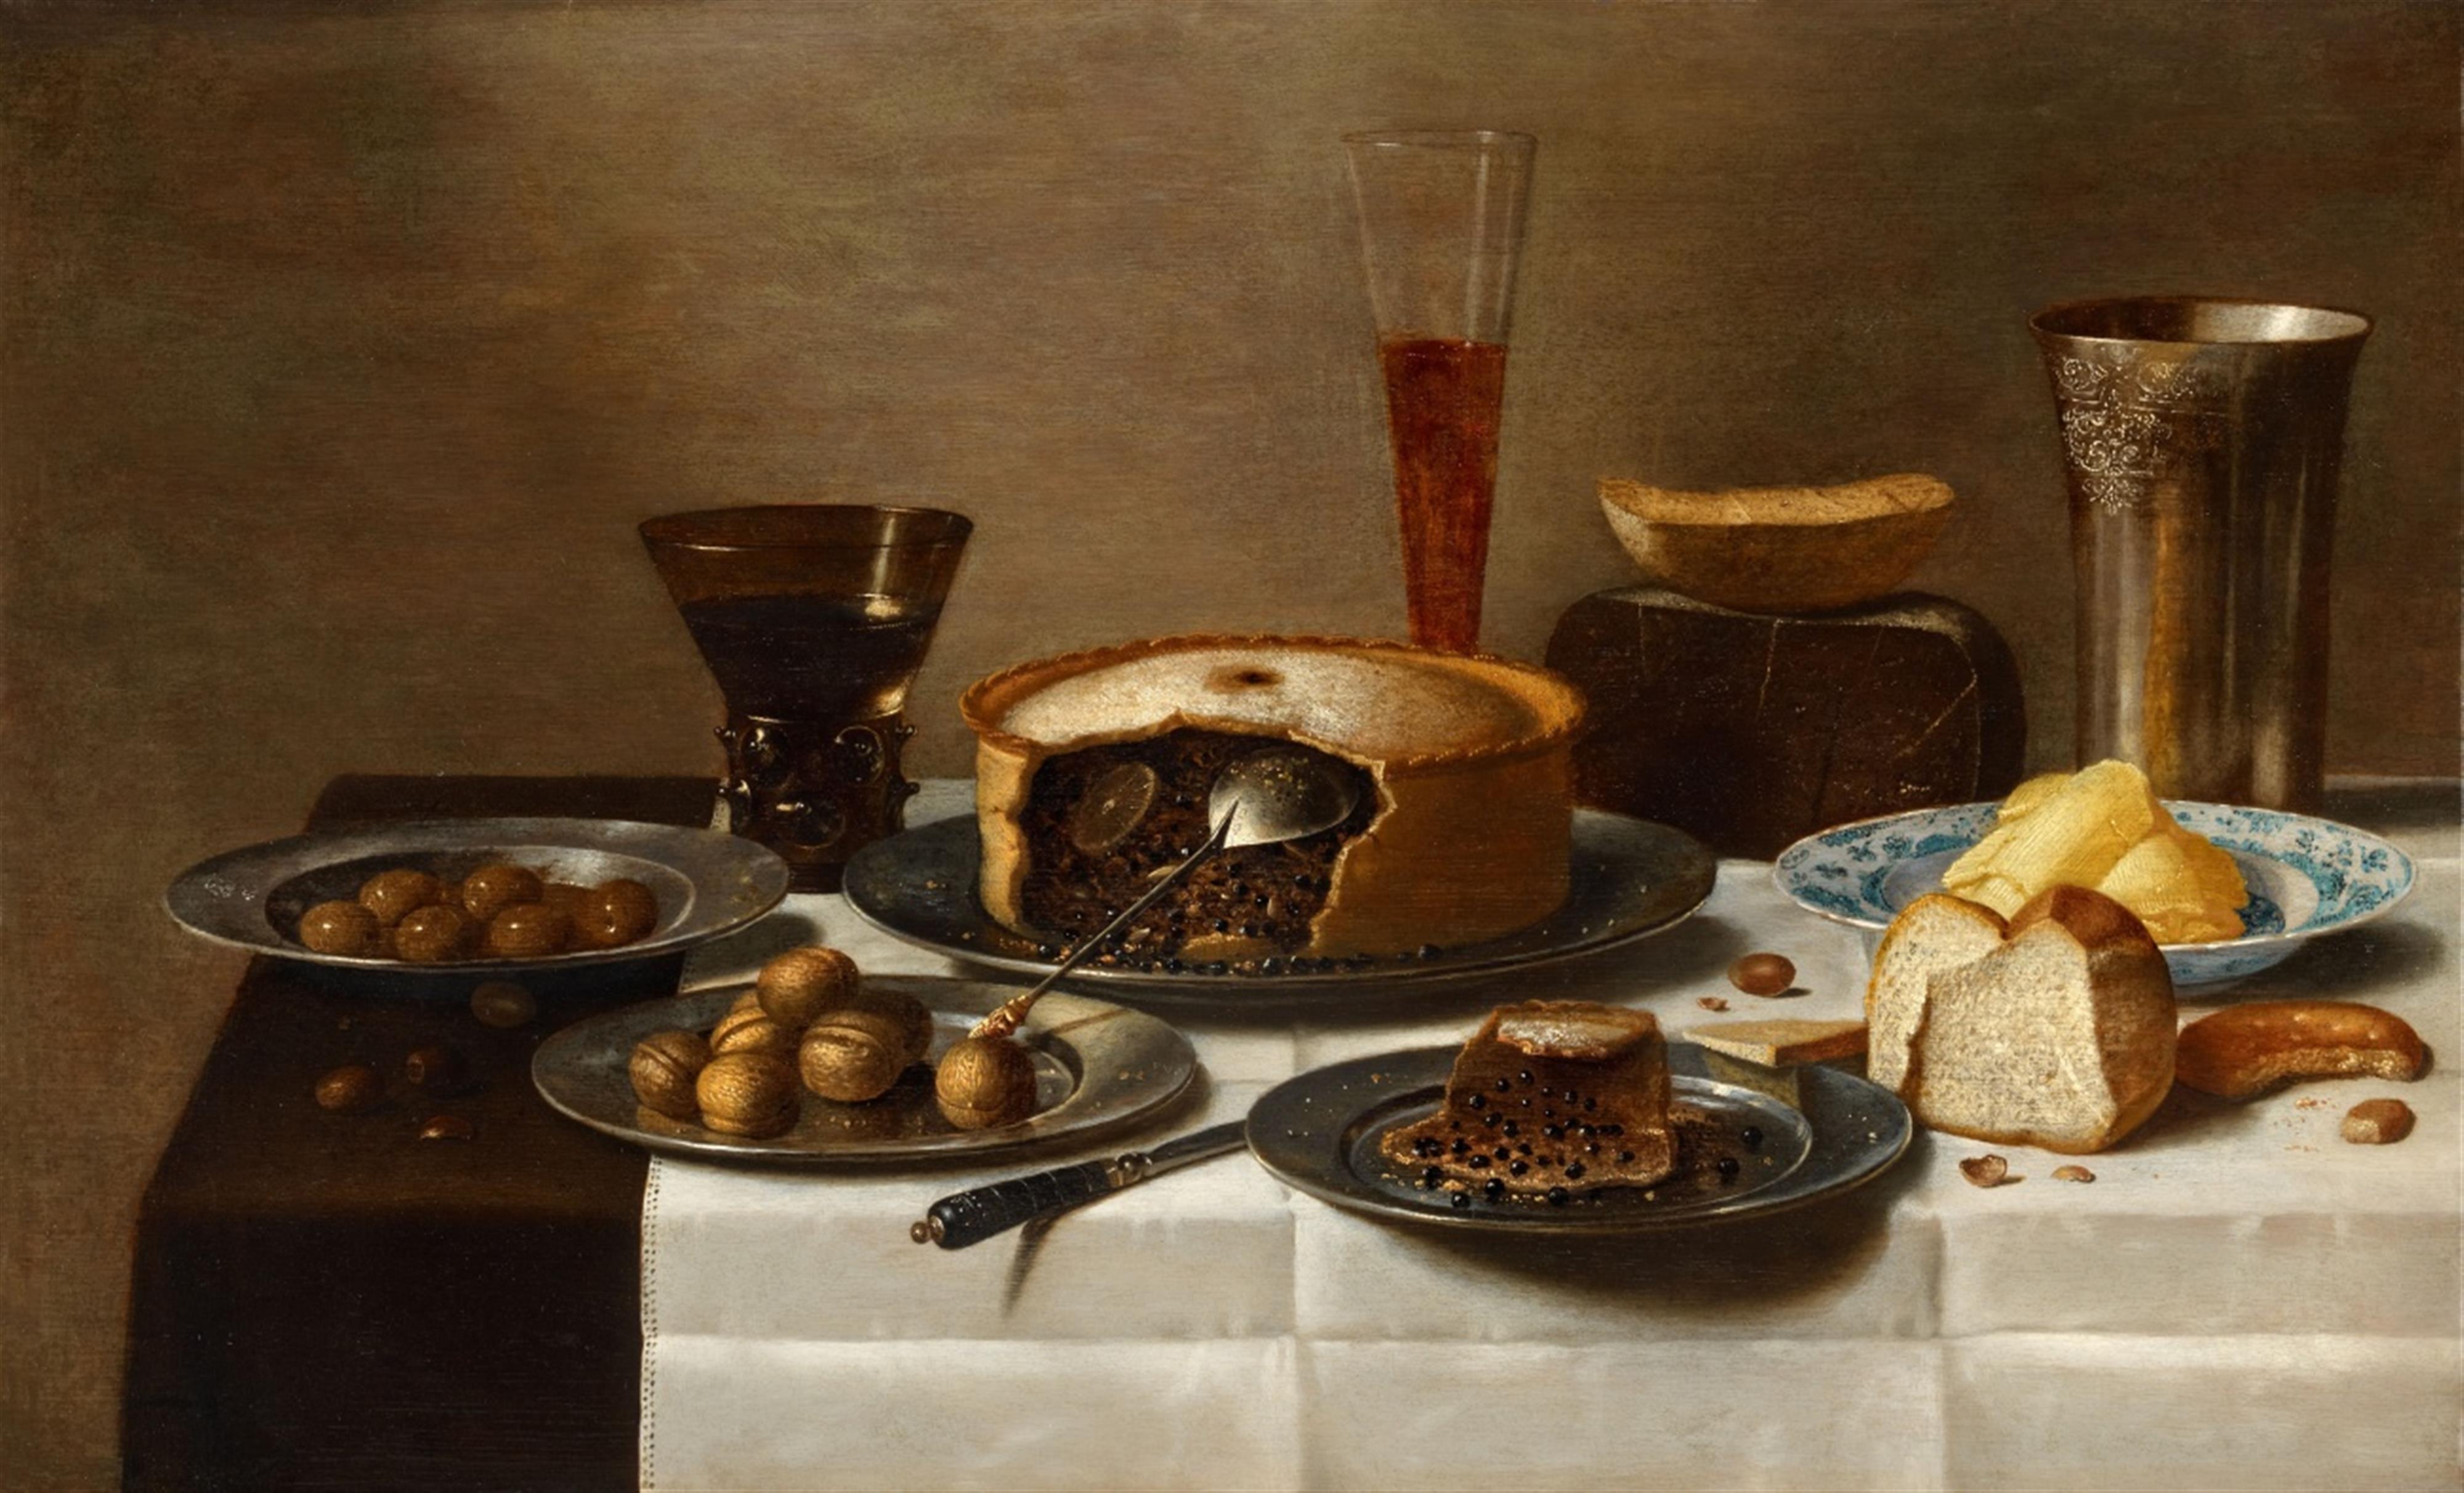 Floris van Schooten - Stillleben mit Pastete, Brot, Nüssen und Gefäßen